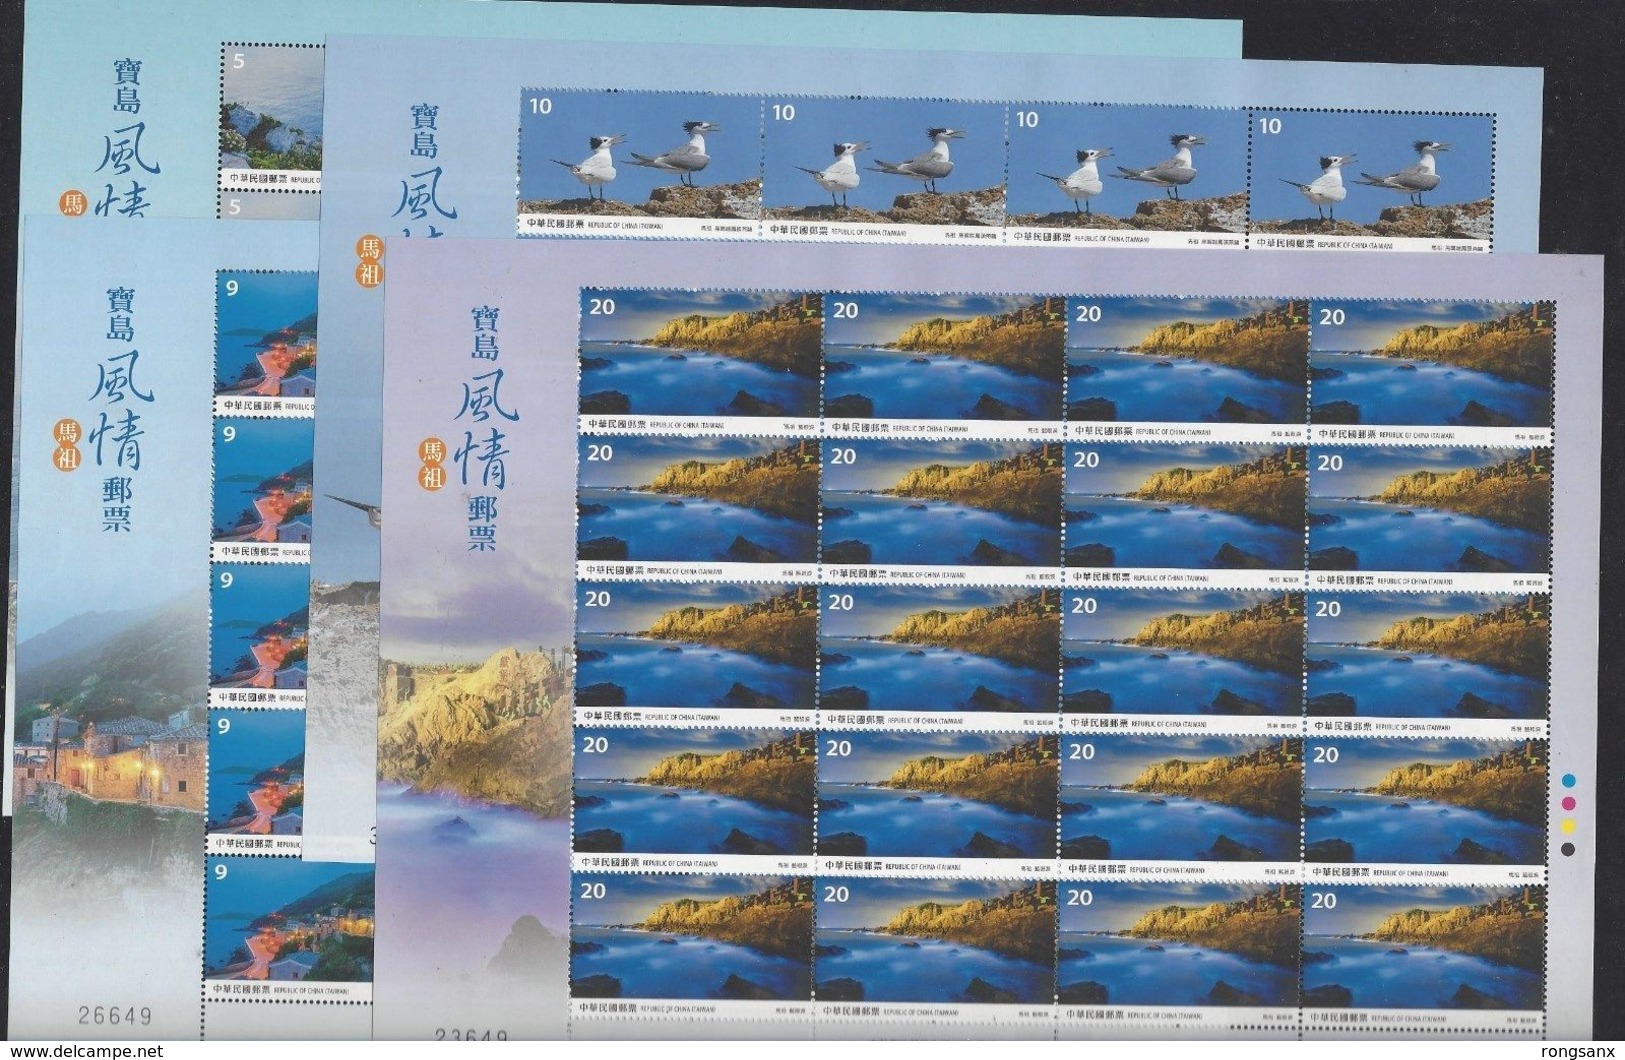 2017 TAIWAN VIEWS OF MAZU STAMP F-SHEET 4V BIRDS LIGHTHOUSES - Blocs-feuillets